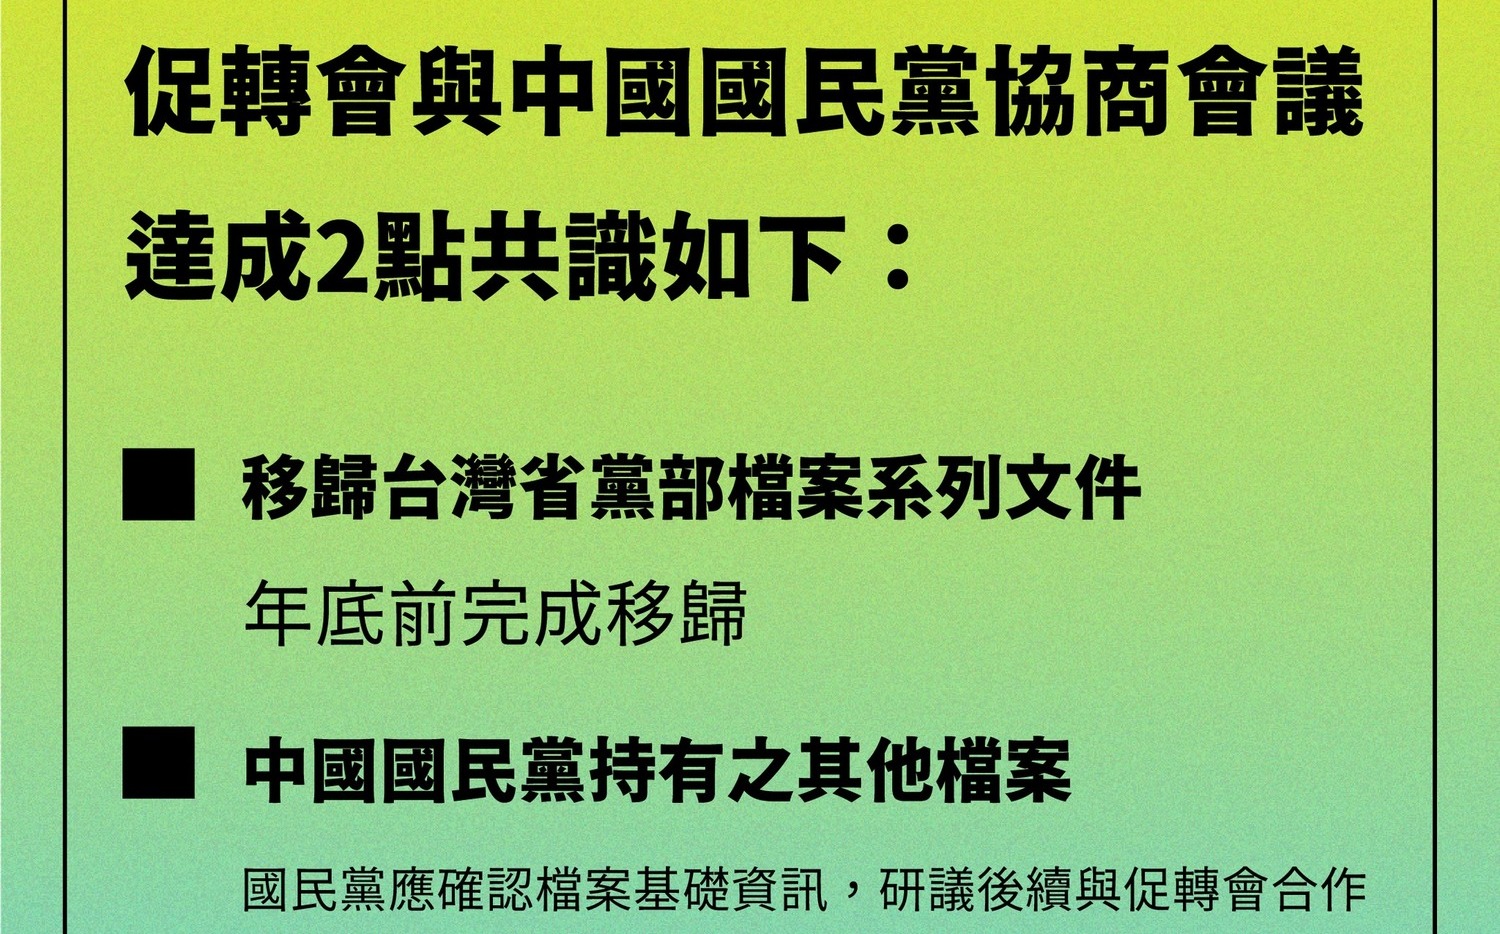 3177筆「台灣省黨部檔案」系列文件移歸 促轉會、國民黨協商2共識 |